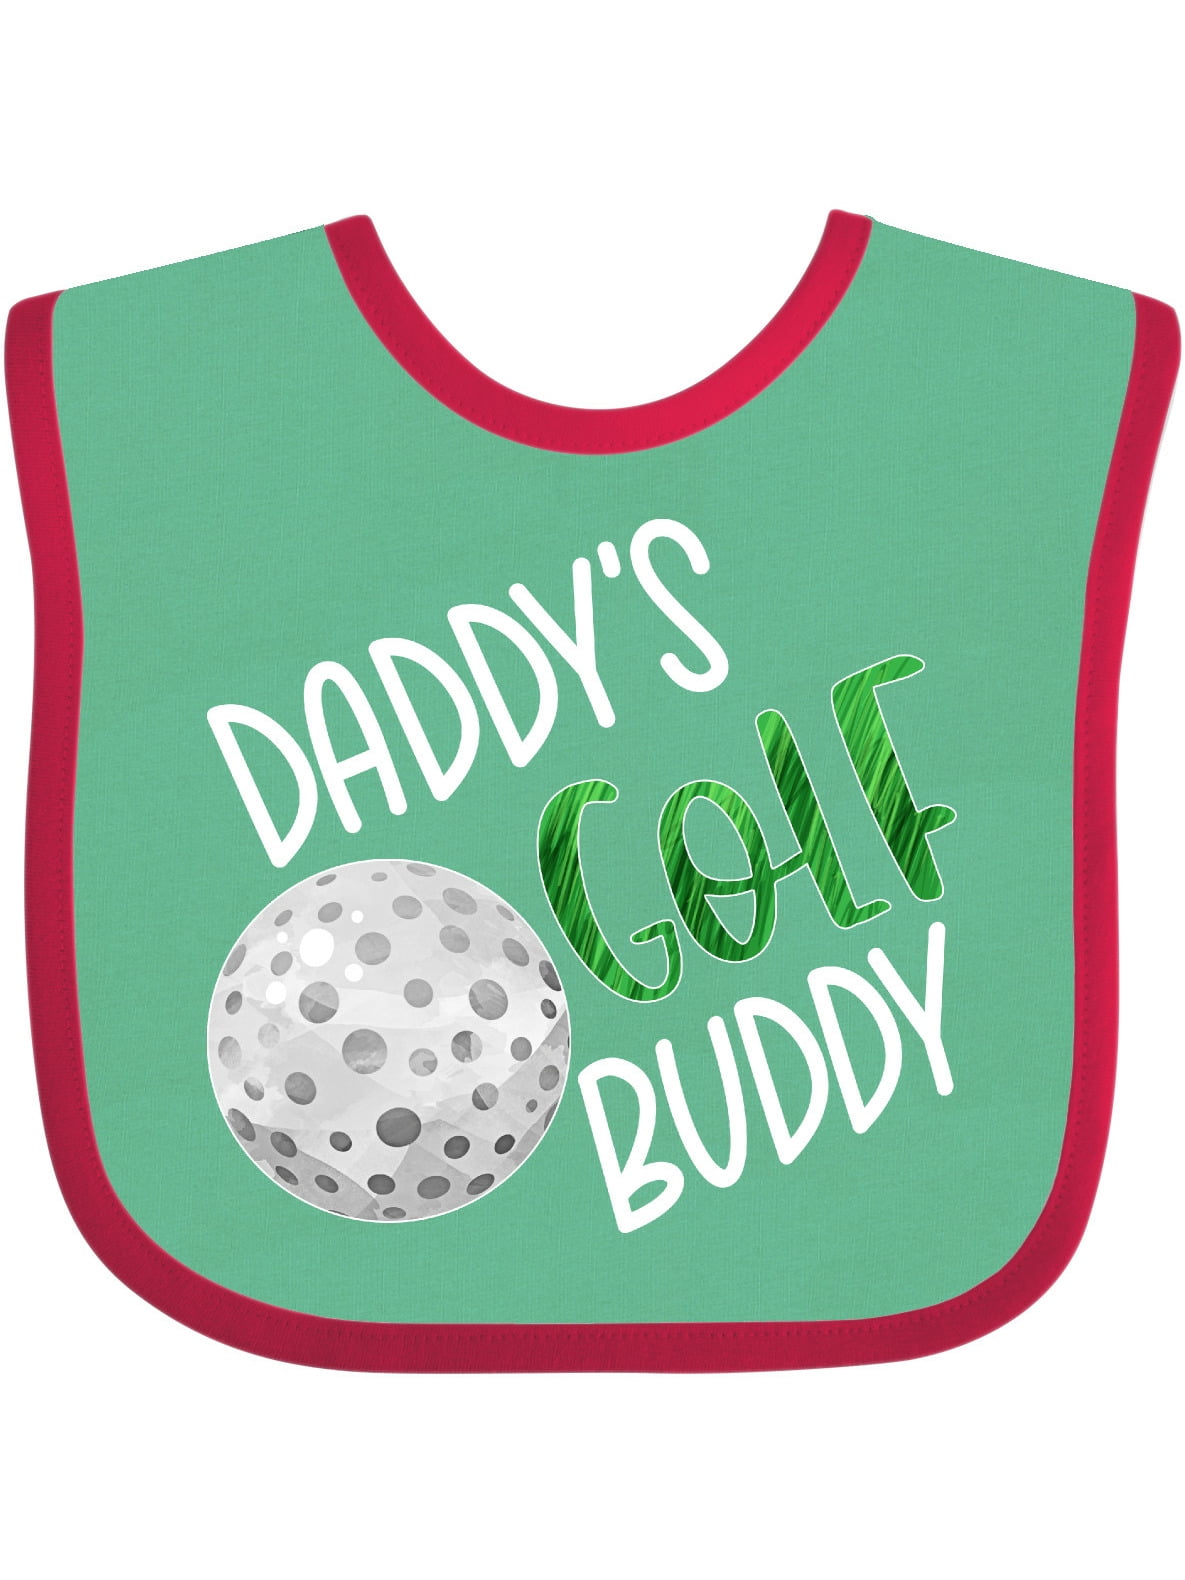 Inktastic Daddy's Golf Buddy with Golf Ball Boys or Girls Baby Bib